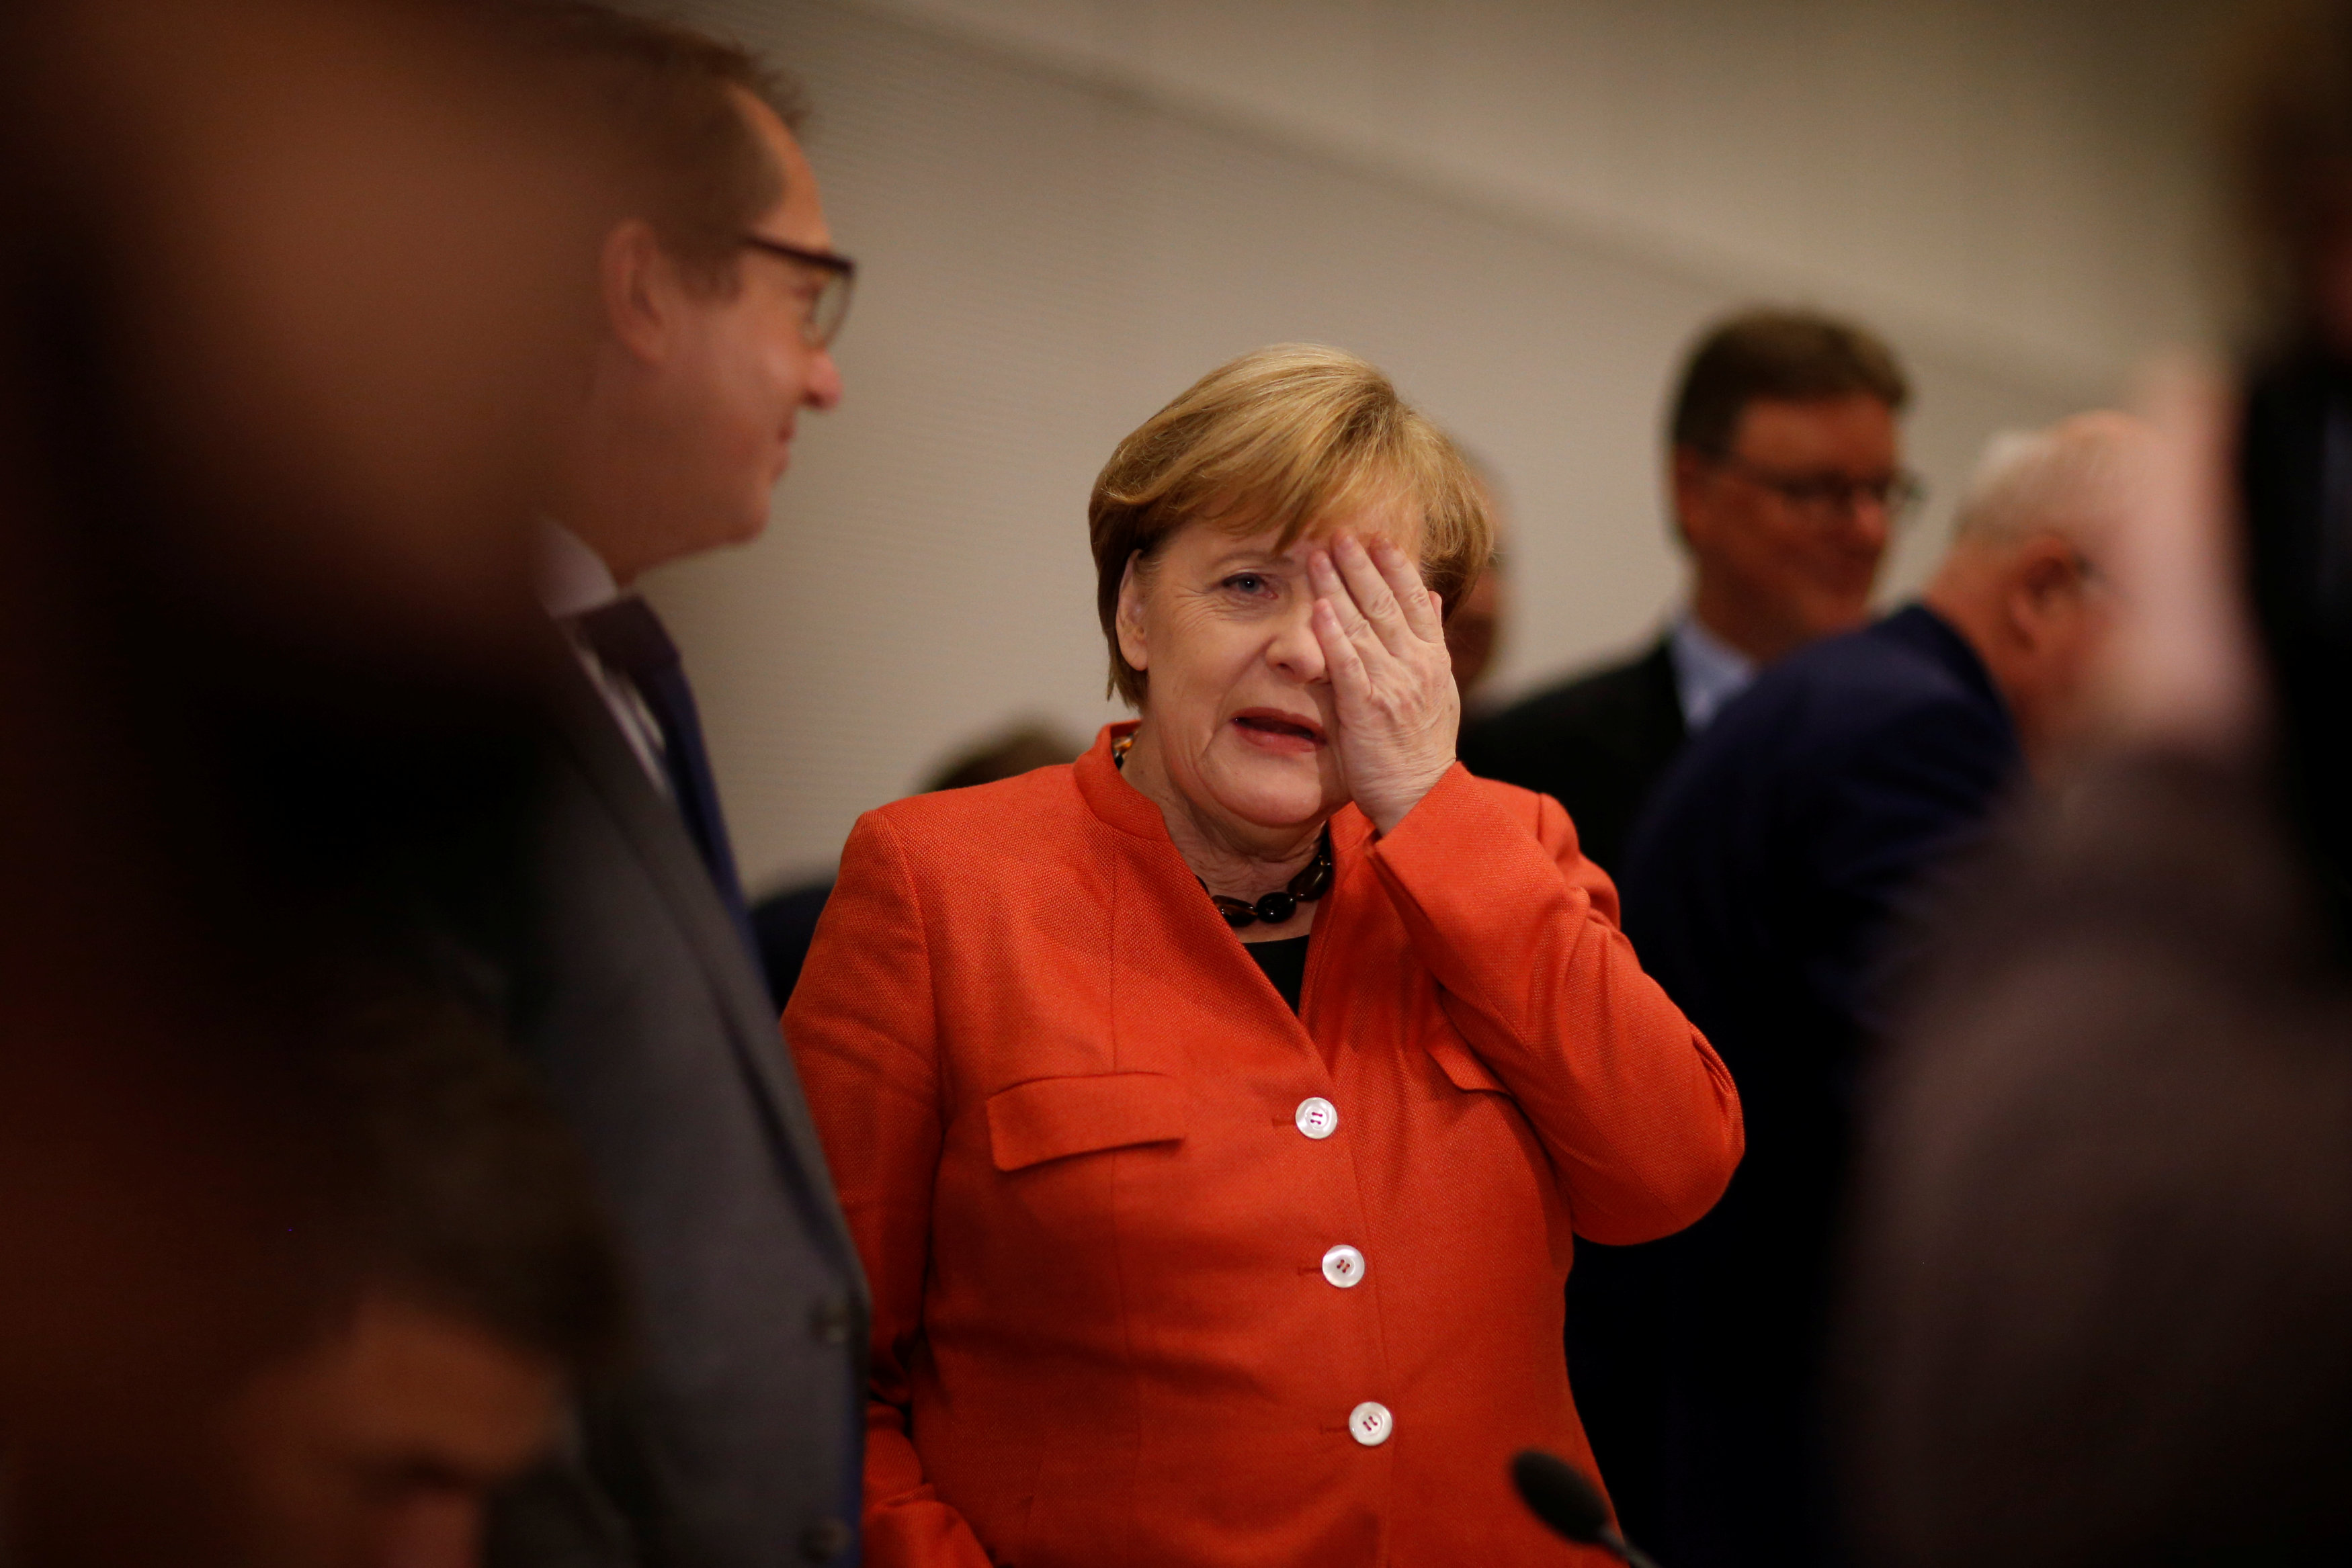 Πολιτική κρίση στη Γερμανία – Σταϊνμάιερ: Υπό την αιγίδα του οι νέες διαβουλεύσεις για σχηματισμό κυβέρνησης συνασπισμού